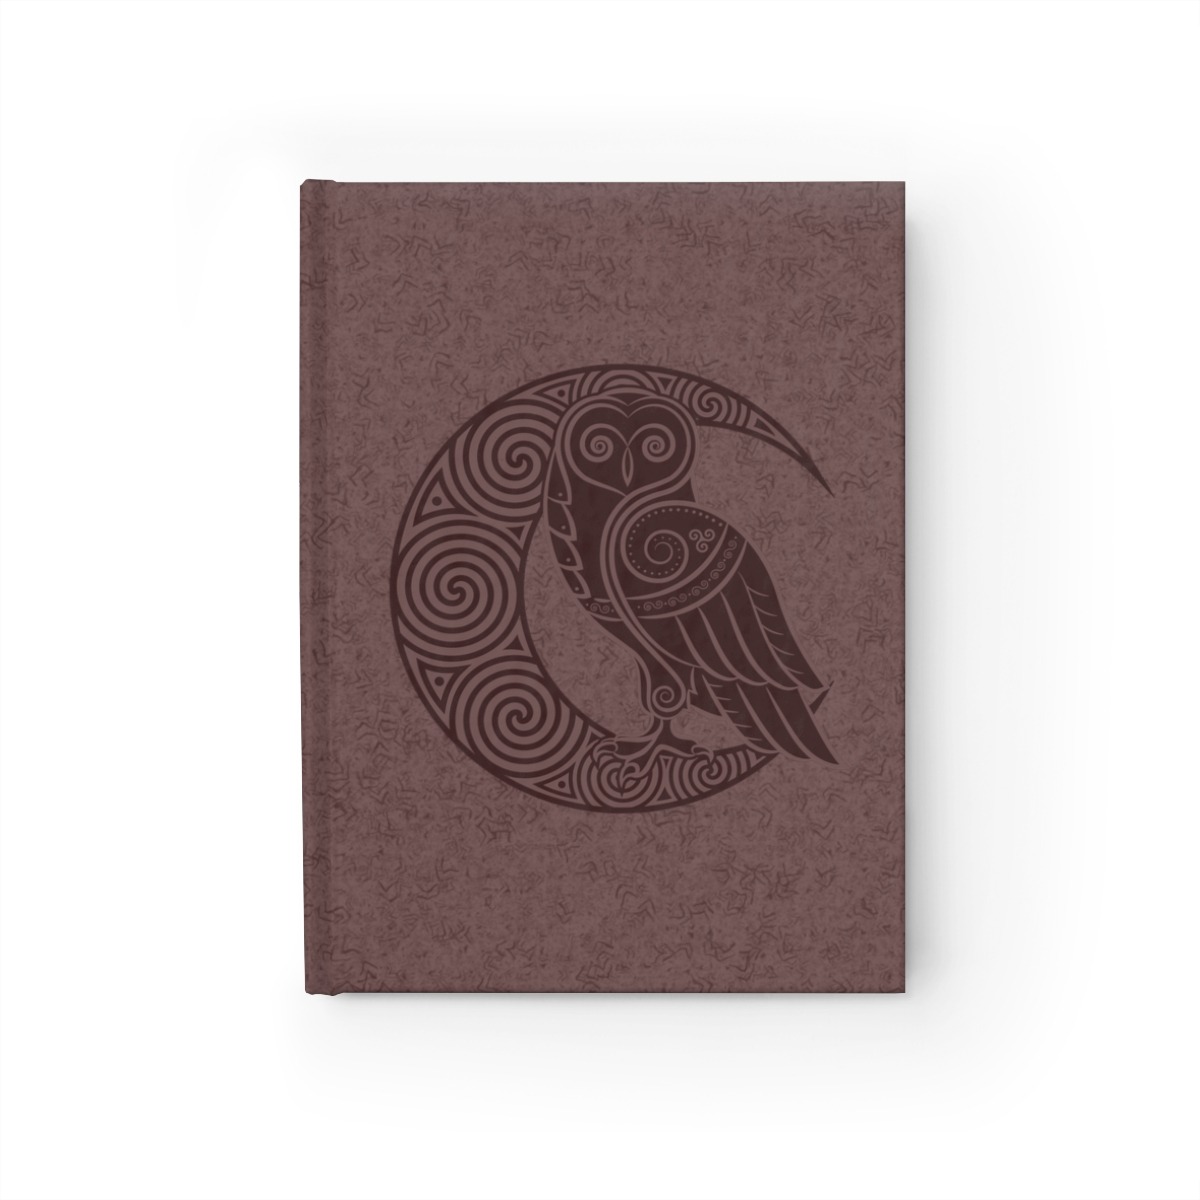 Maroon Owl Crescent Moon Journal